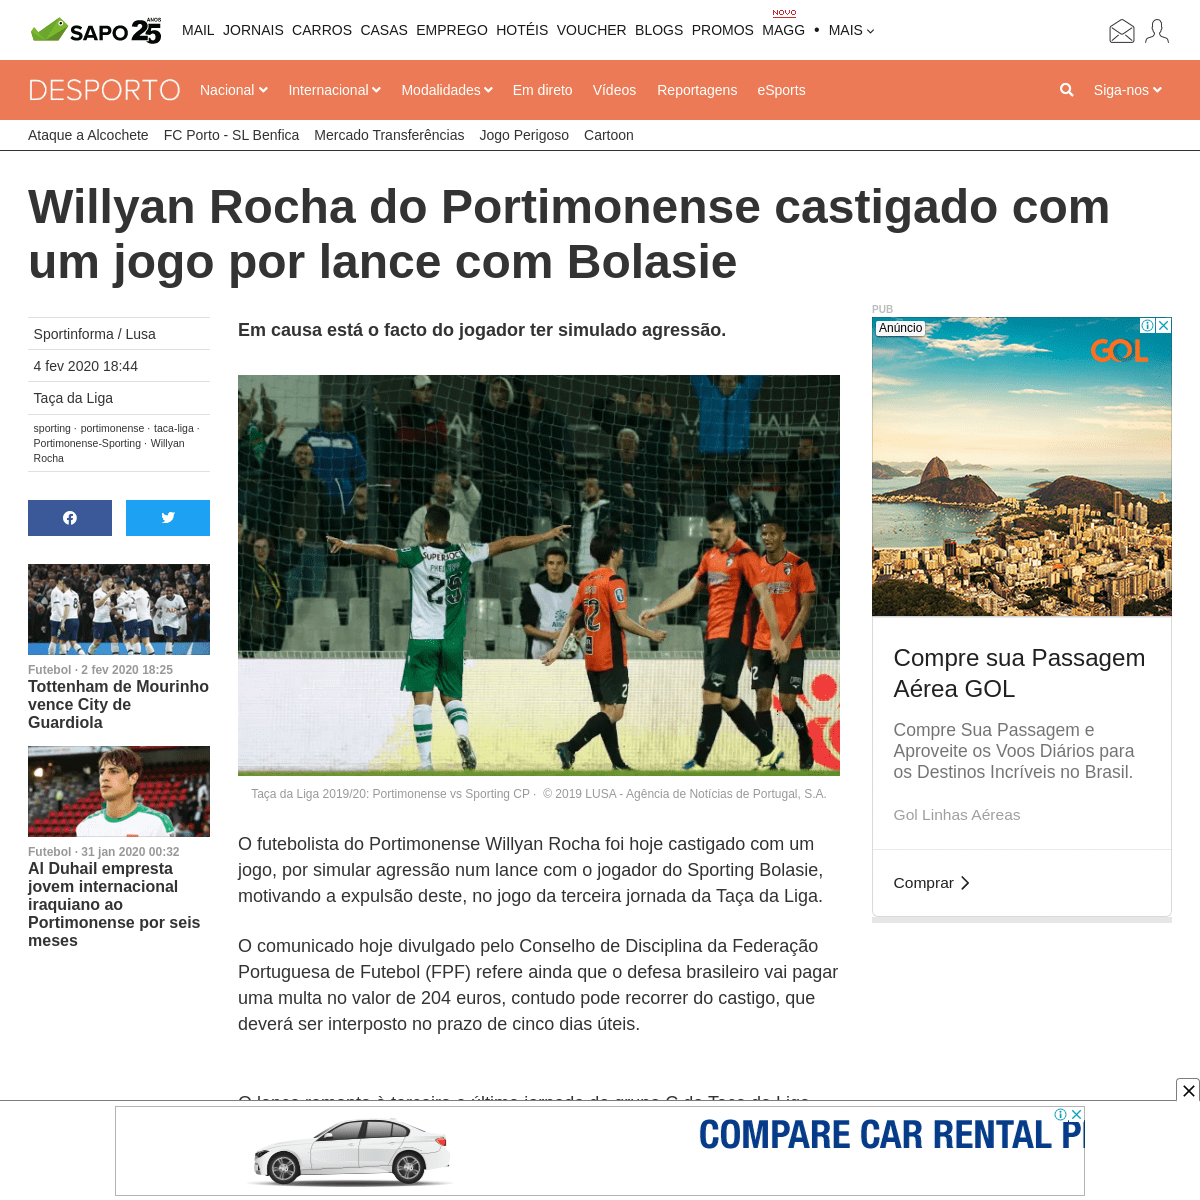 A complete backup of desporto.sapo.pt/futebol/taca-da-liga/artigos/willyan-rocha-do-portimonense-castigado-com-um-jogo-por-lance